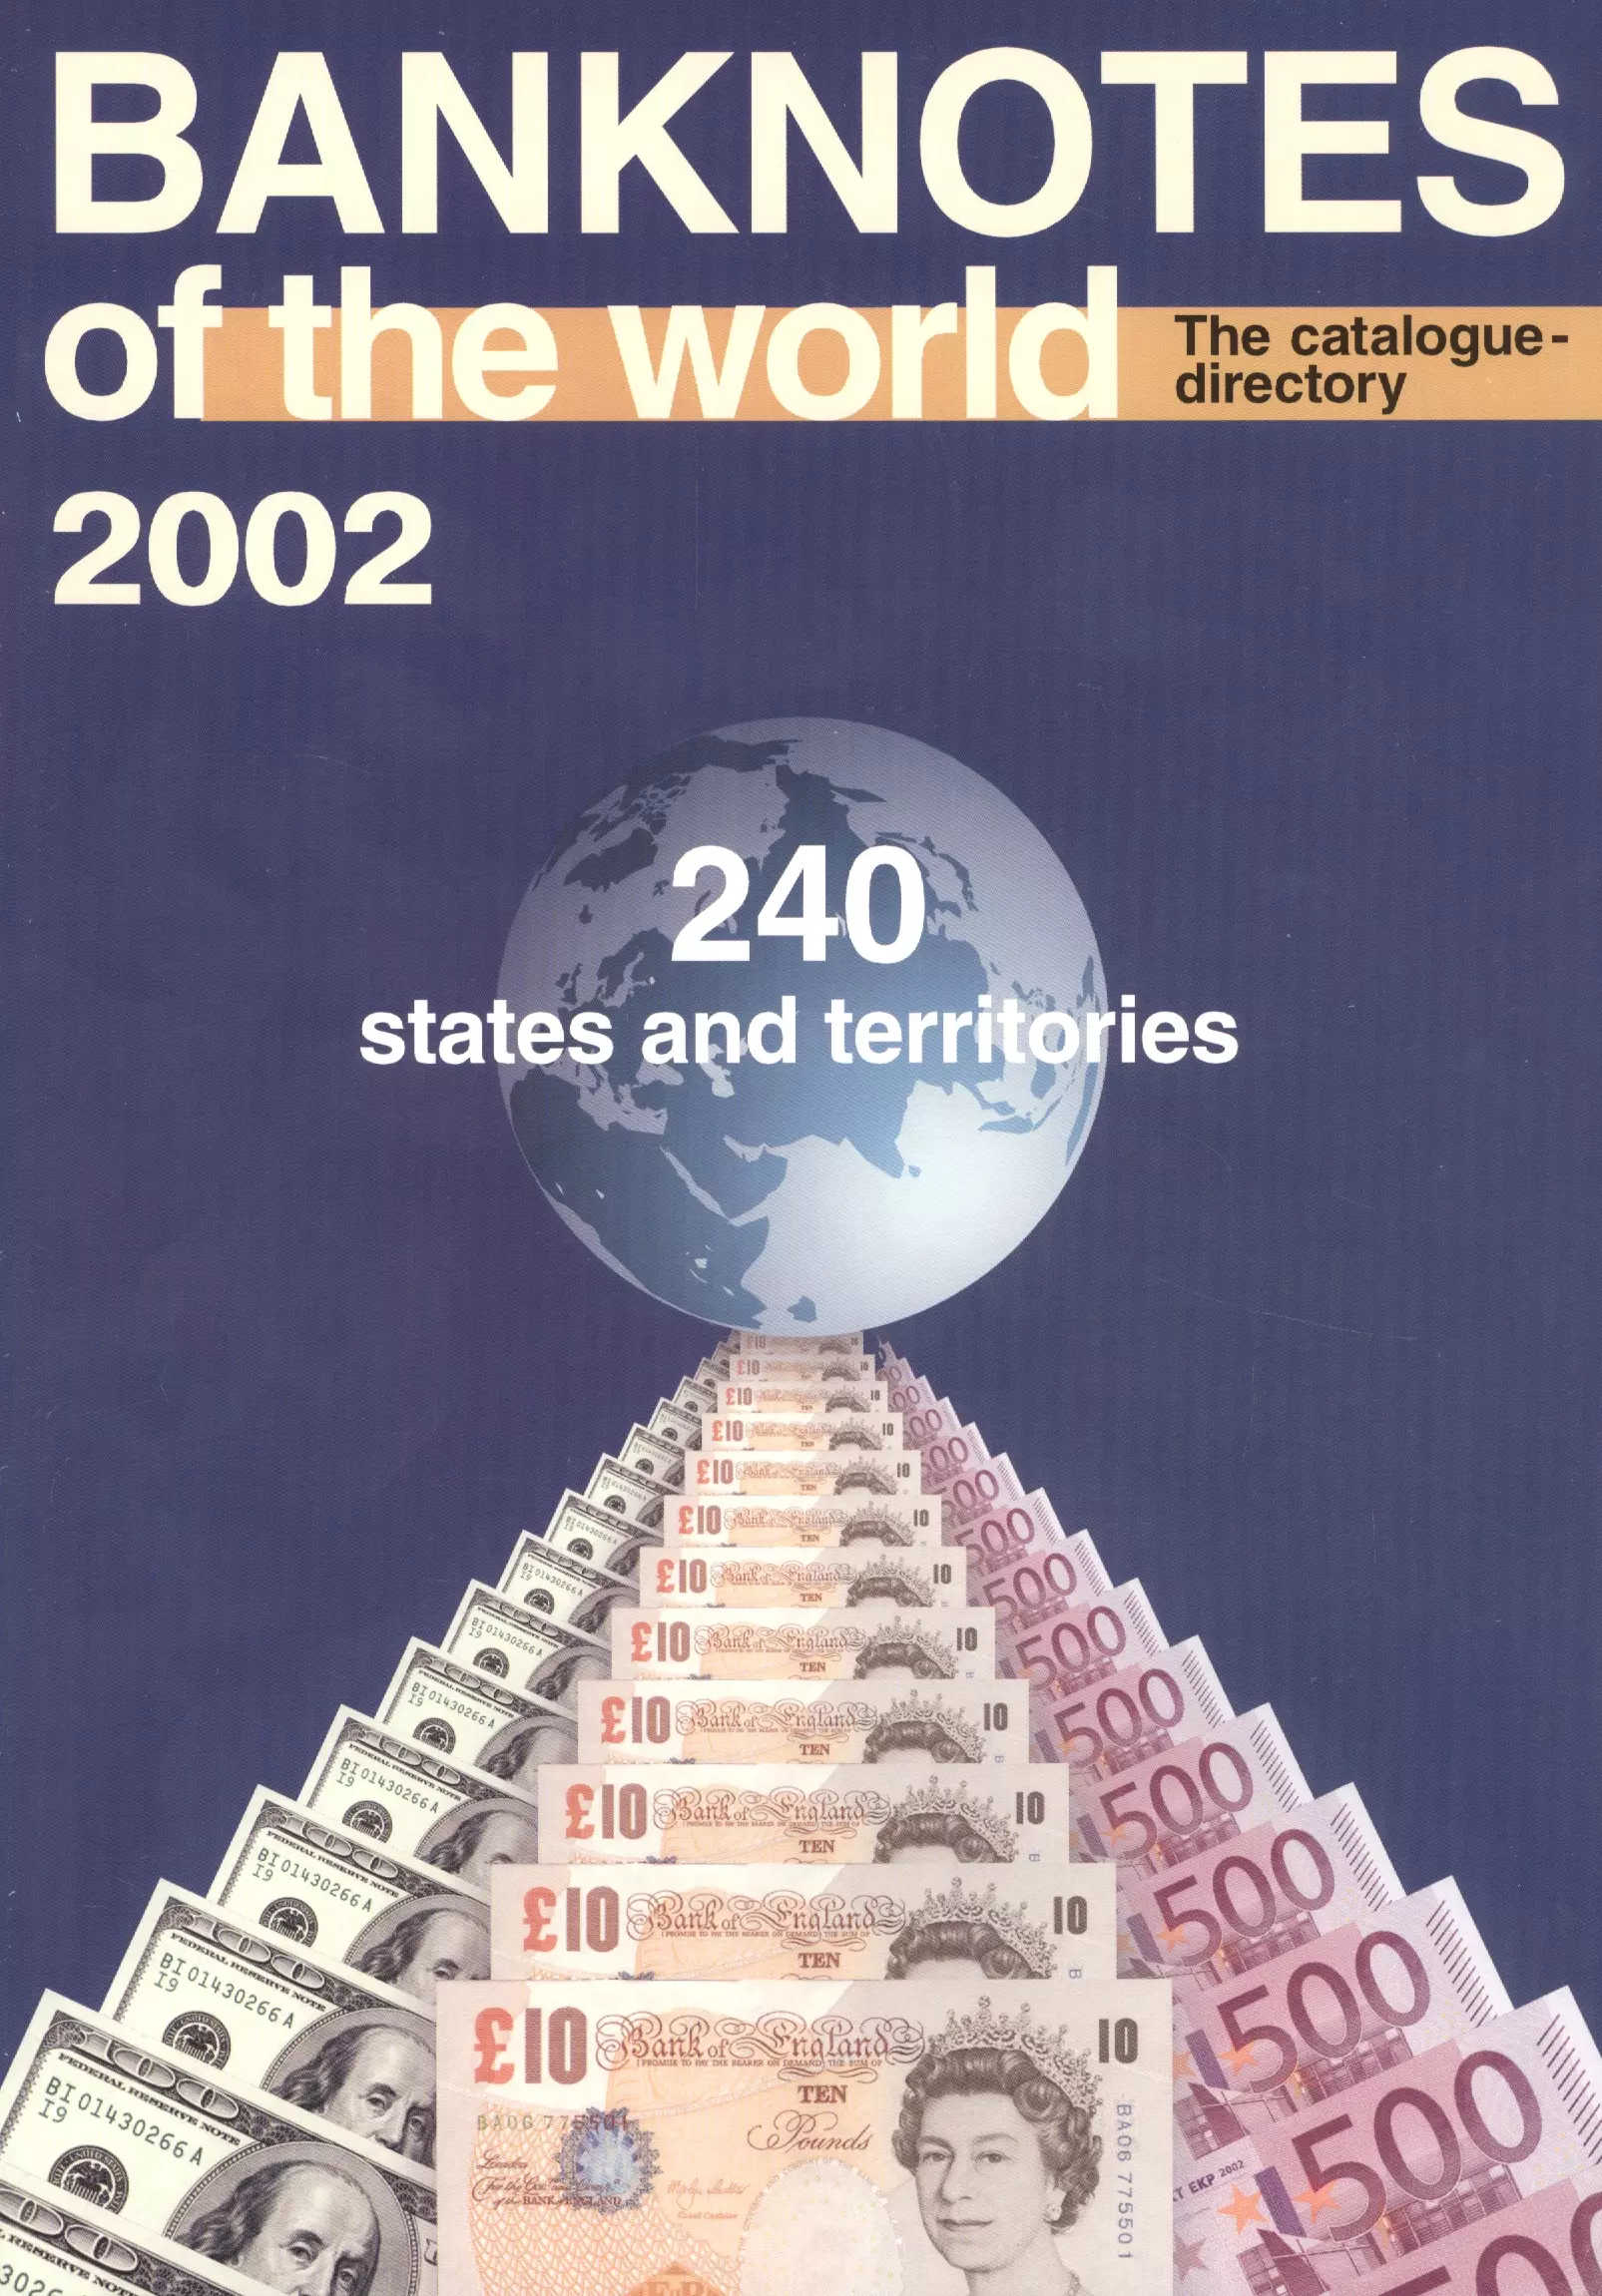  - Банкноты стран мира: денежное обращение Каталог-справочник 2002 год 240 стран и территорий